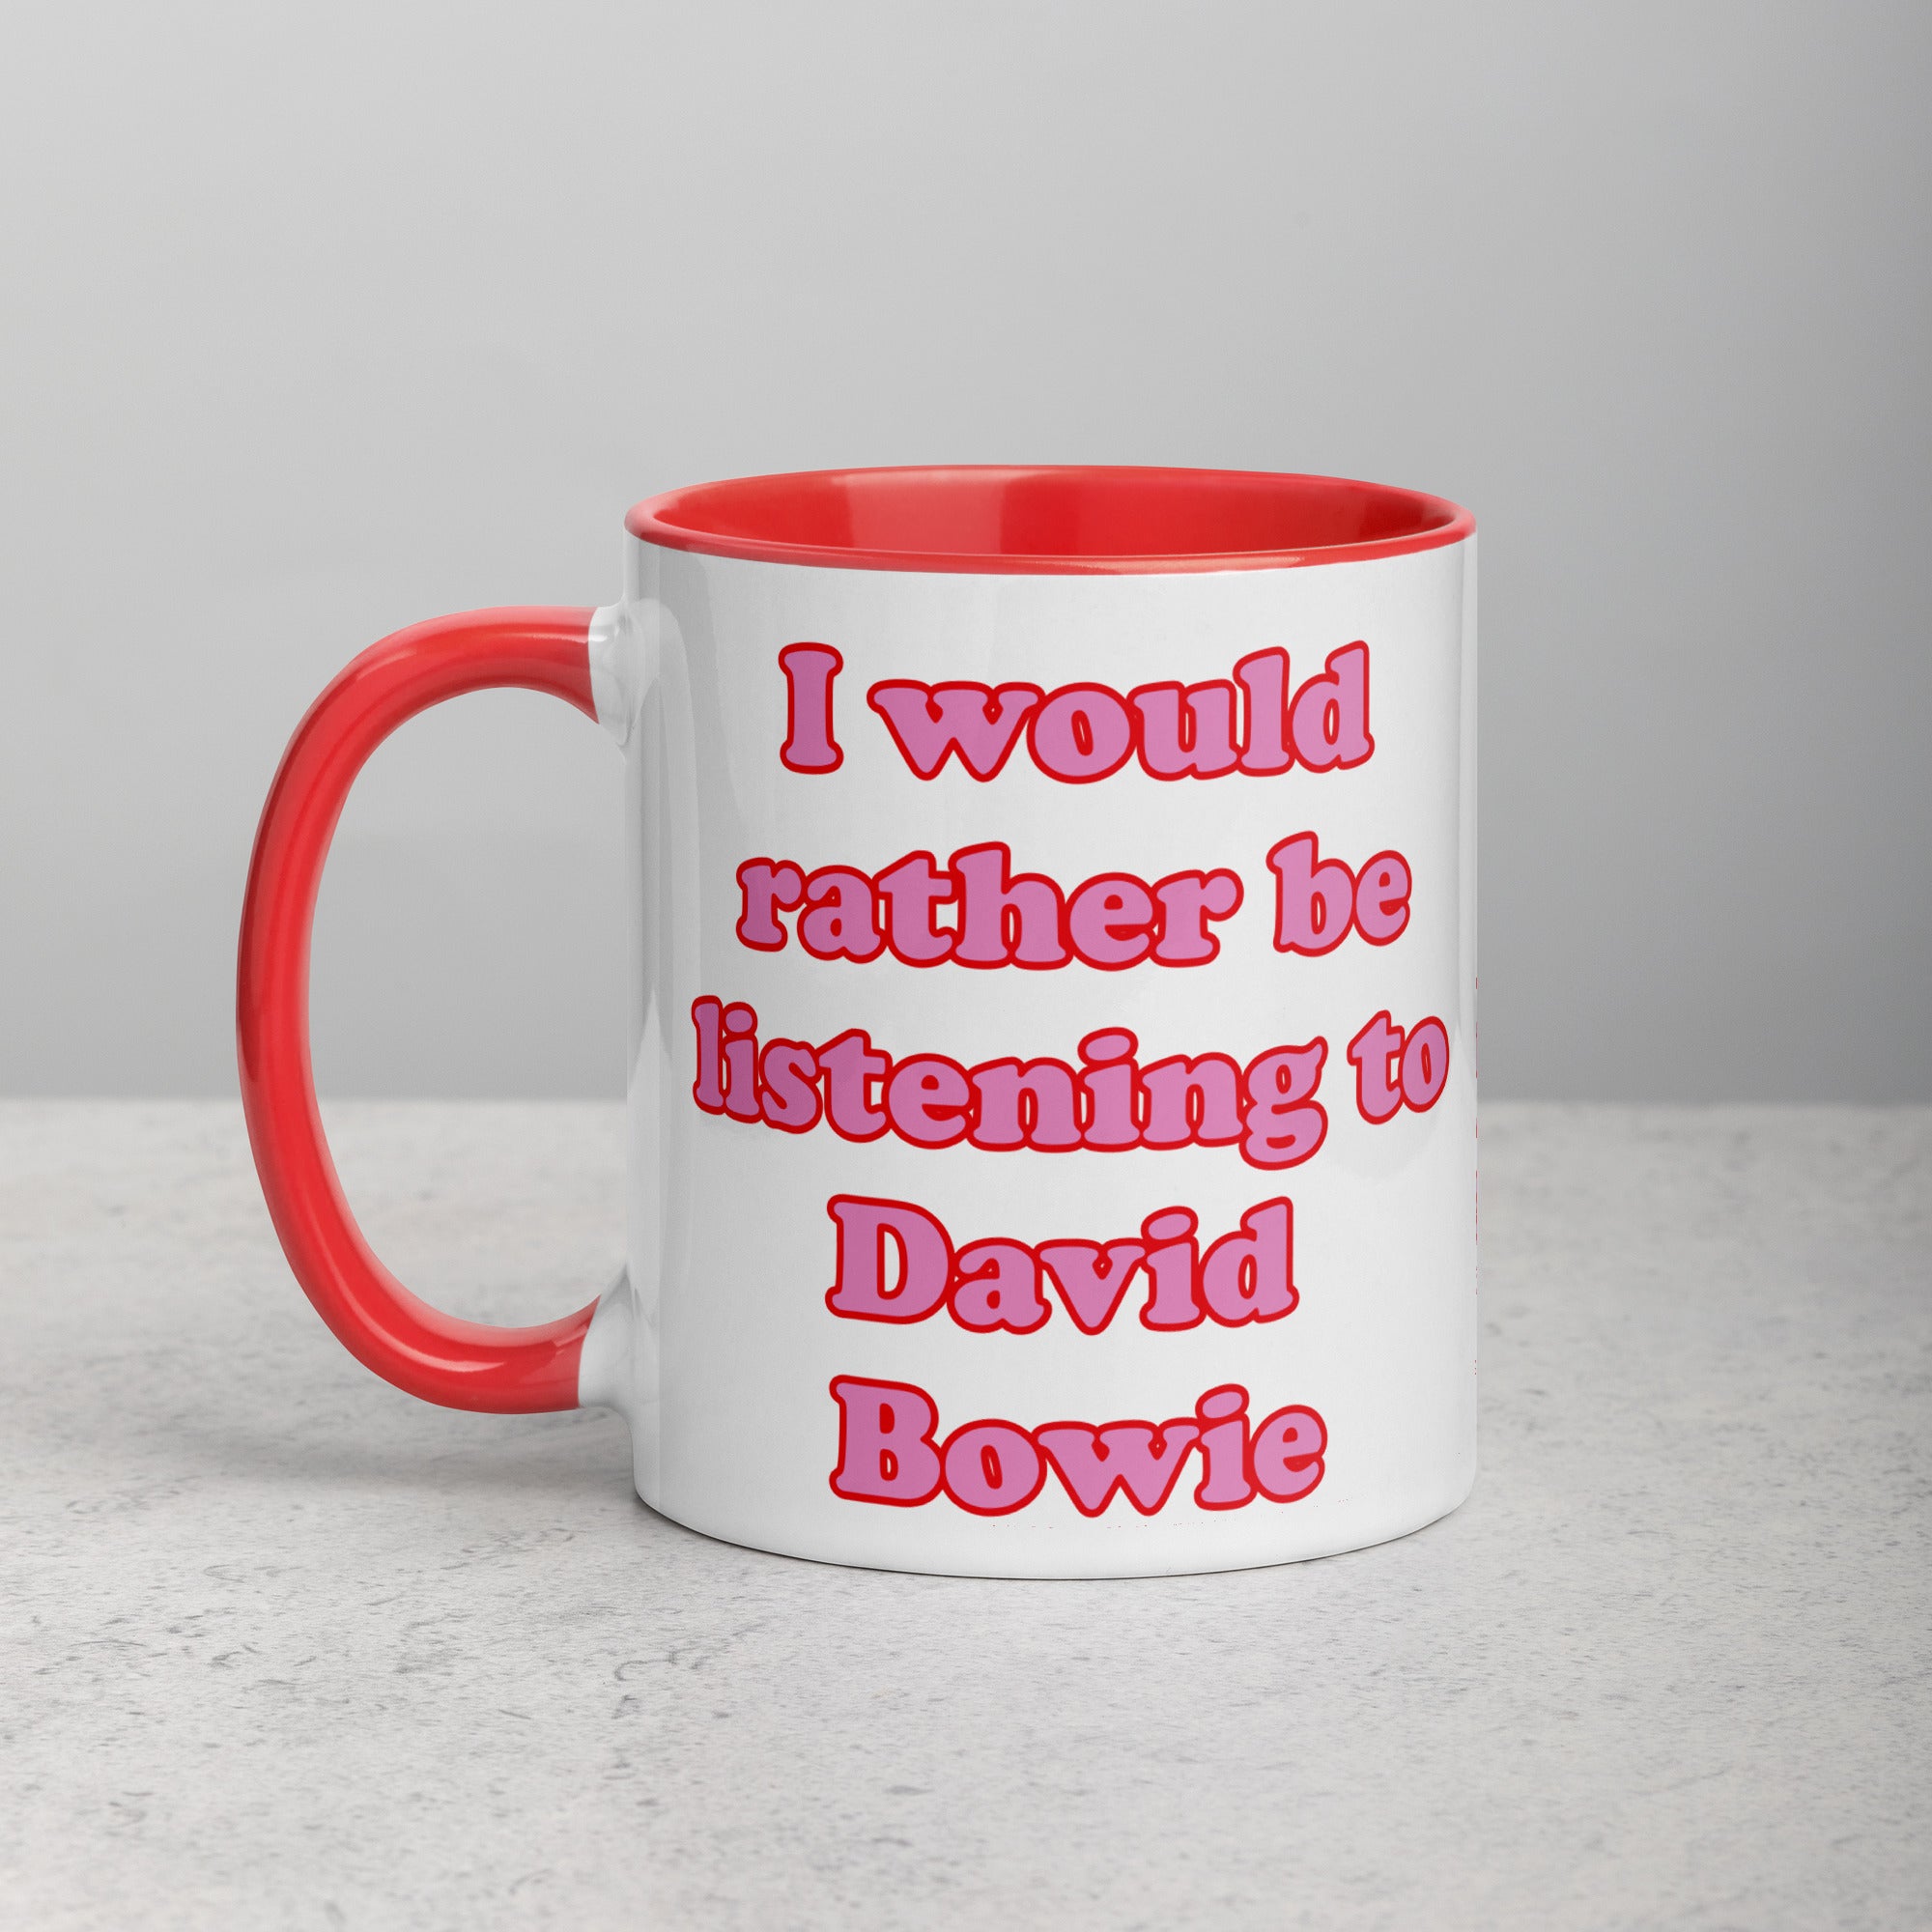 我宁愿听大卫·鲍伊 (DAVID BOWIE) 印花红色/粉色字体马克杯，内部颜色可选